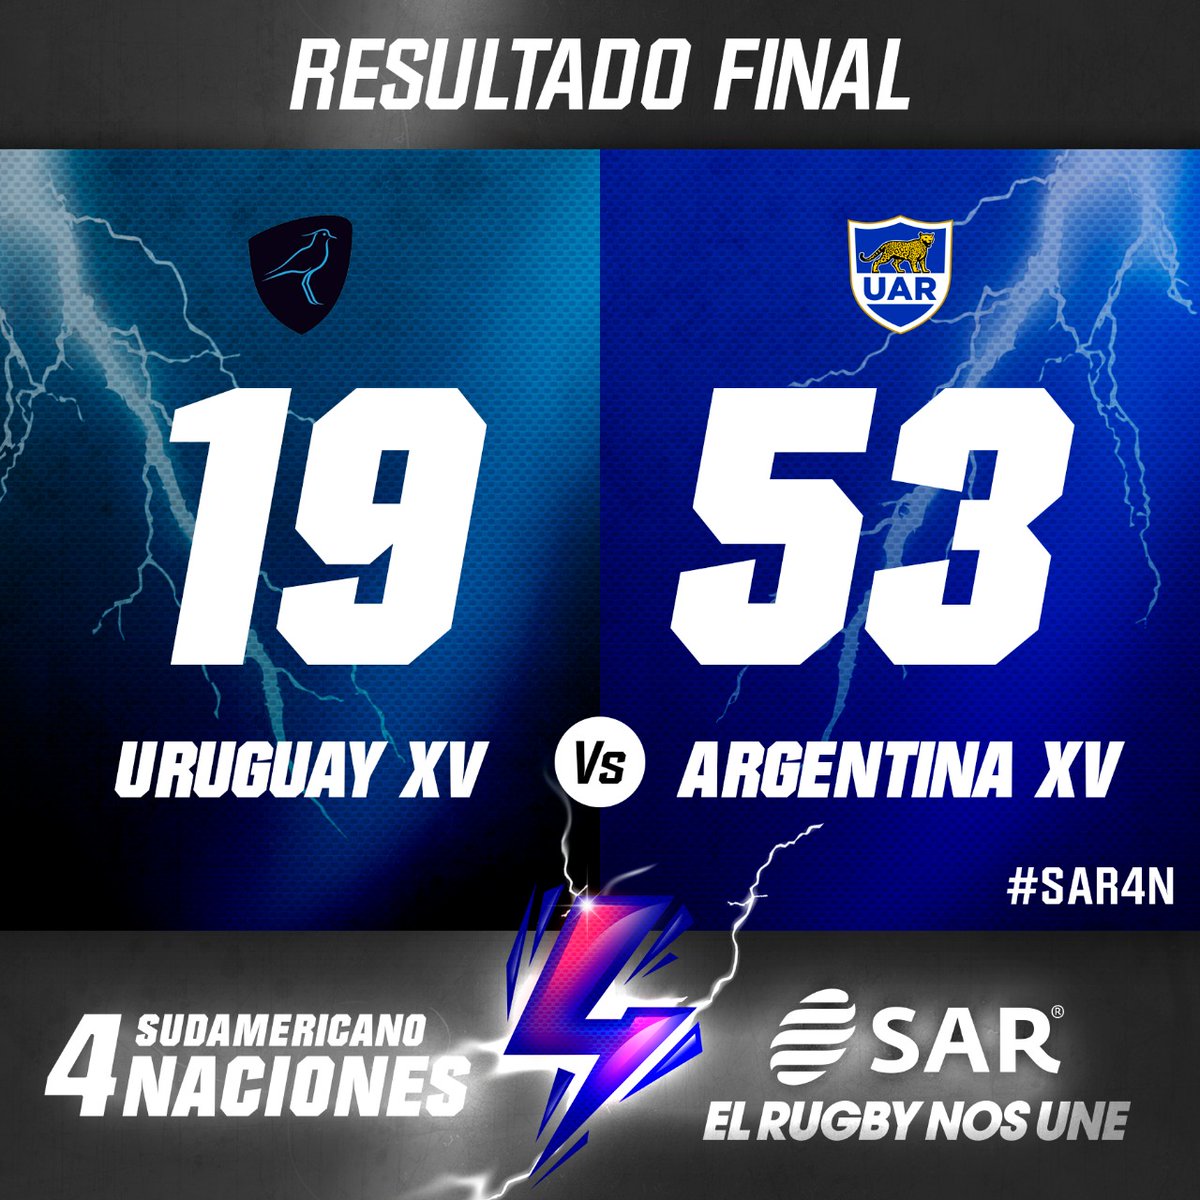 #SAR4N ⚡| Final del partido⚡💥 ¡Argentina campeón! 🇦🇷👏🏼 @argentina_xv 🇦🇷 venció a @RugbyUruguay 🇺🇾 por 53-19 en la última fecha y se consagró campeón del Sudamericano 4 Naciones 💥 ¡Felicitaciones! #ElRugbyNosUne